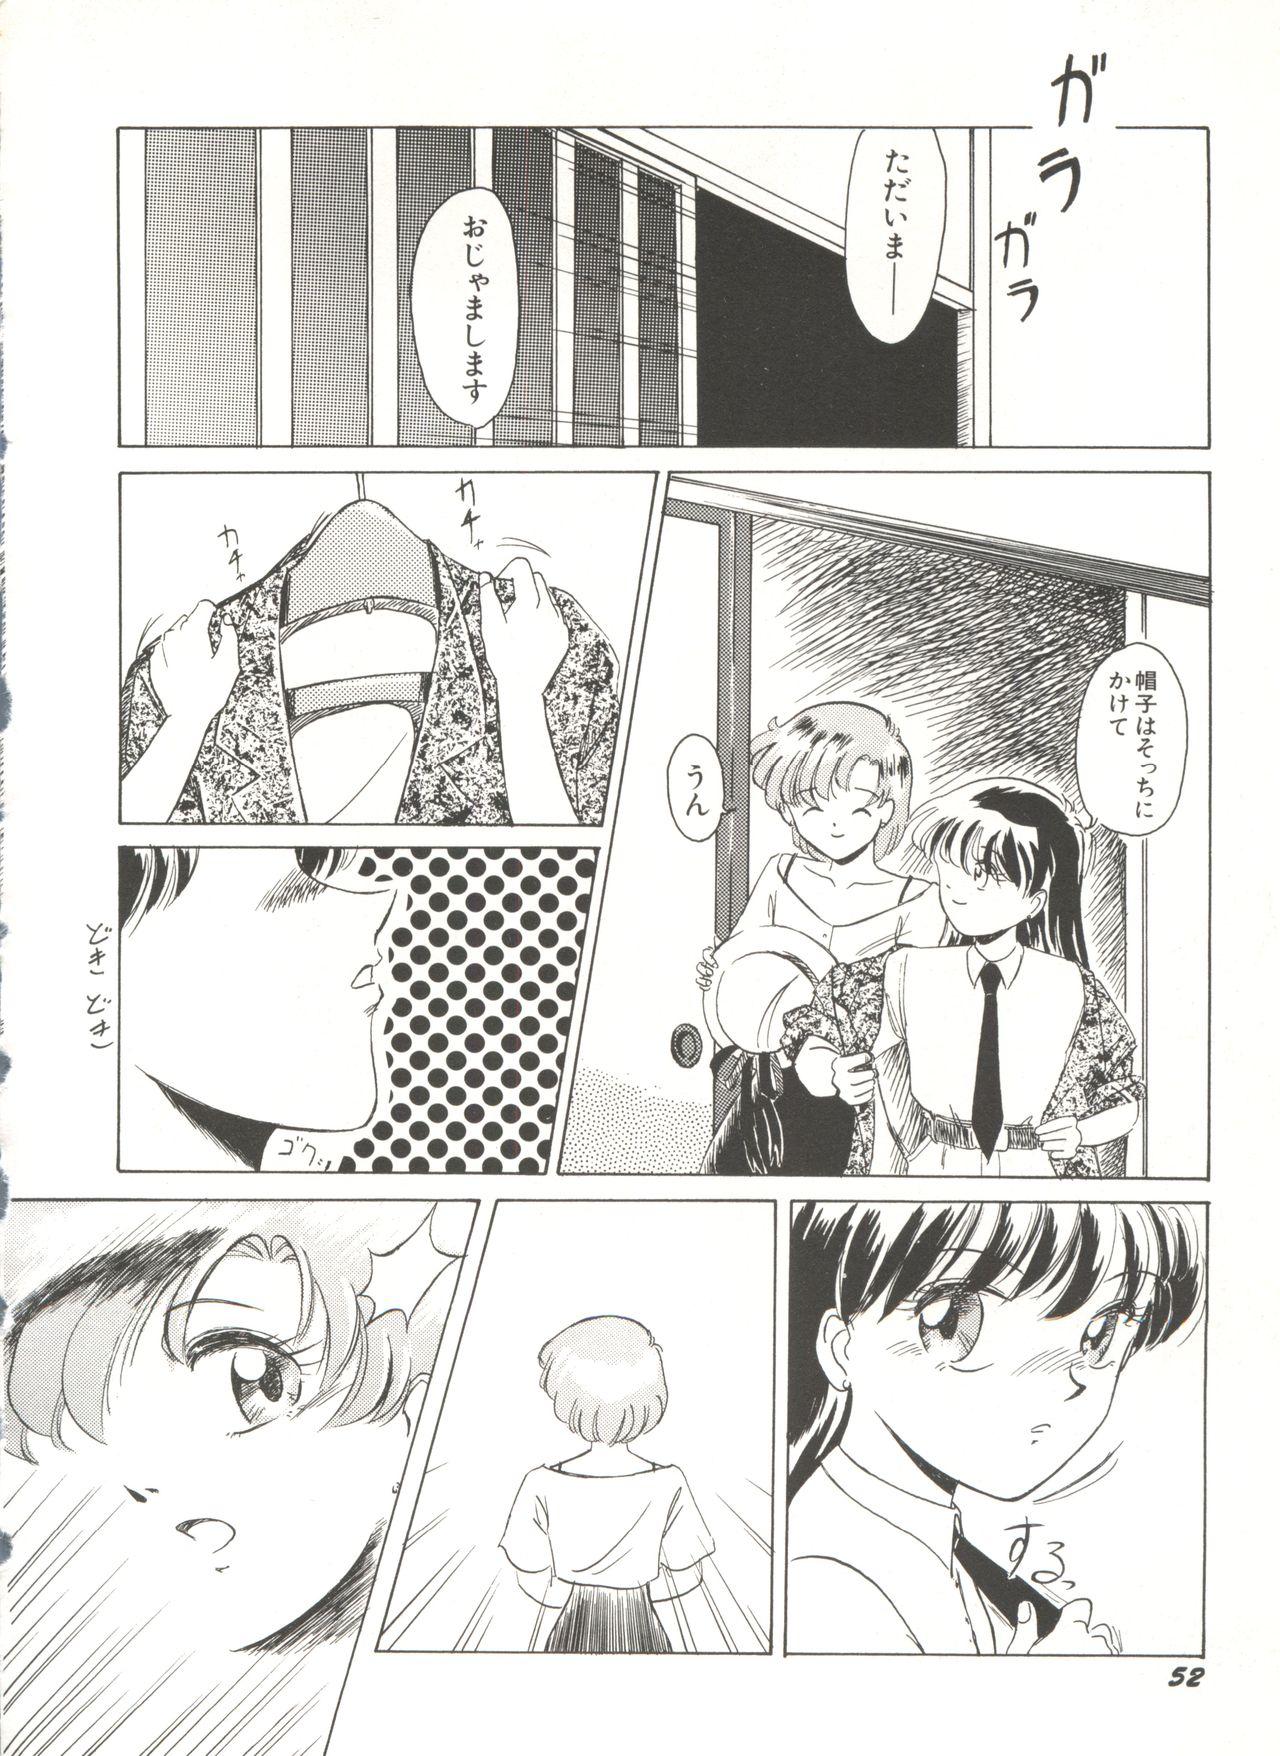 Bishoujo Doujinshi Anthology 16 - Moon Paradise 10 Tsuki no Rakuen 56